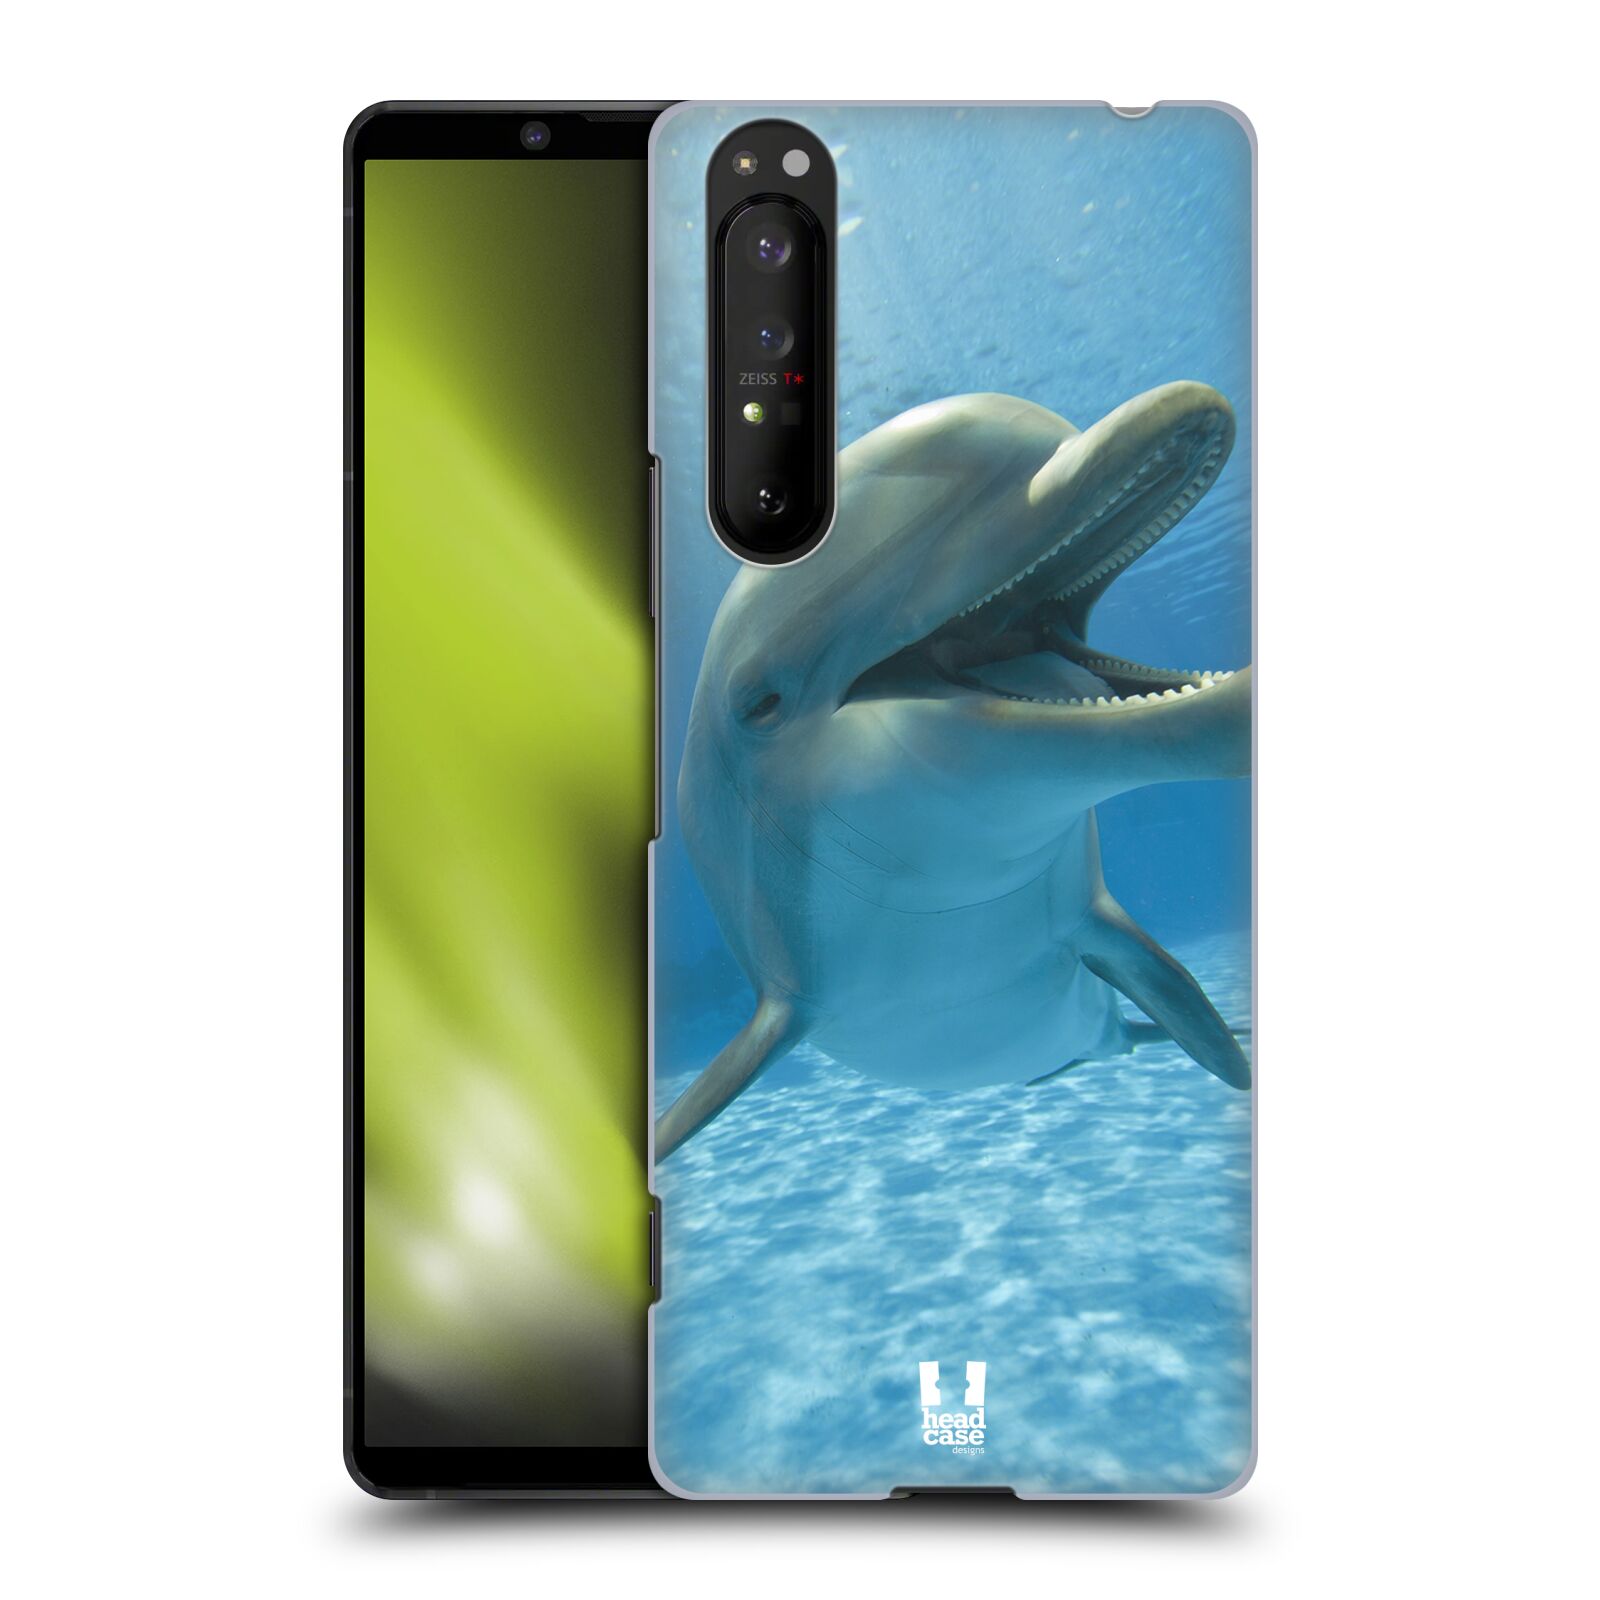 Zadní obal pro mobil Sony Xperia 1 II - HEAD CASE - Svět zvířat delfín v moři